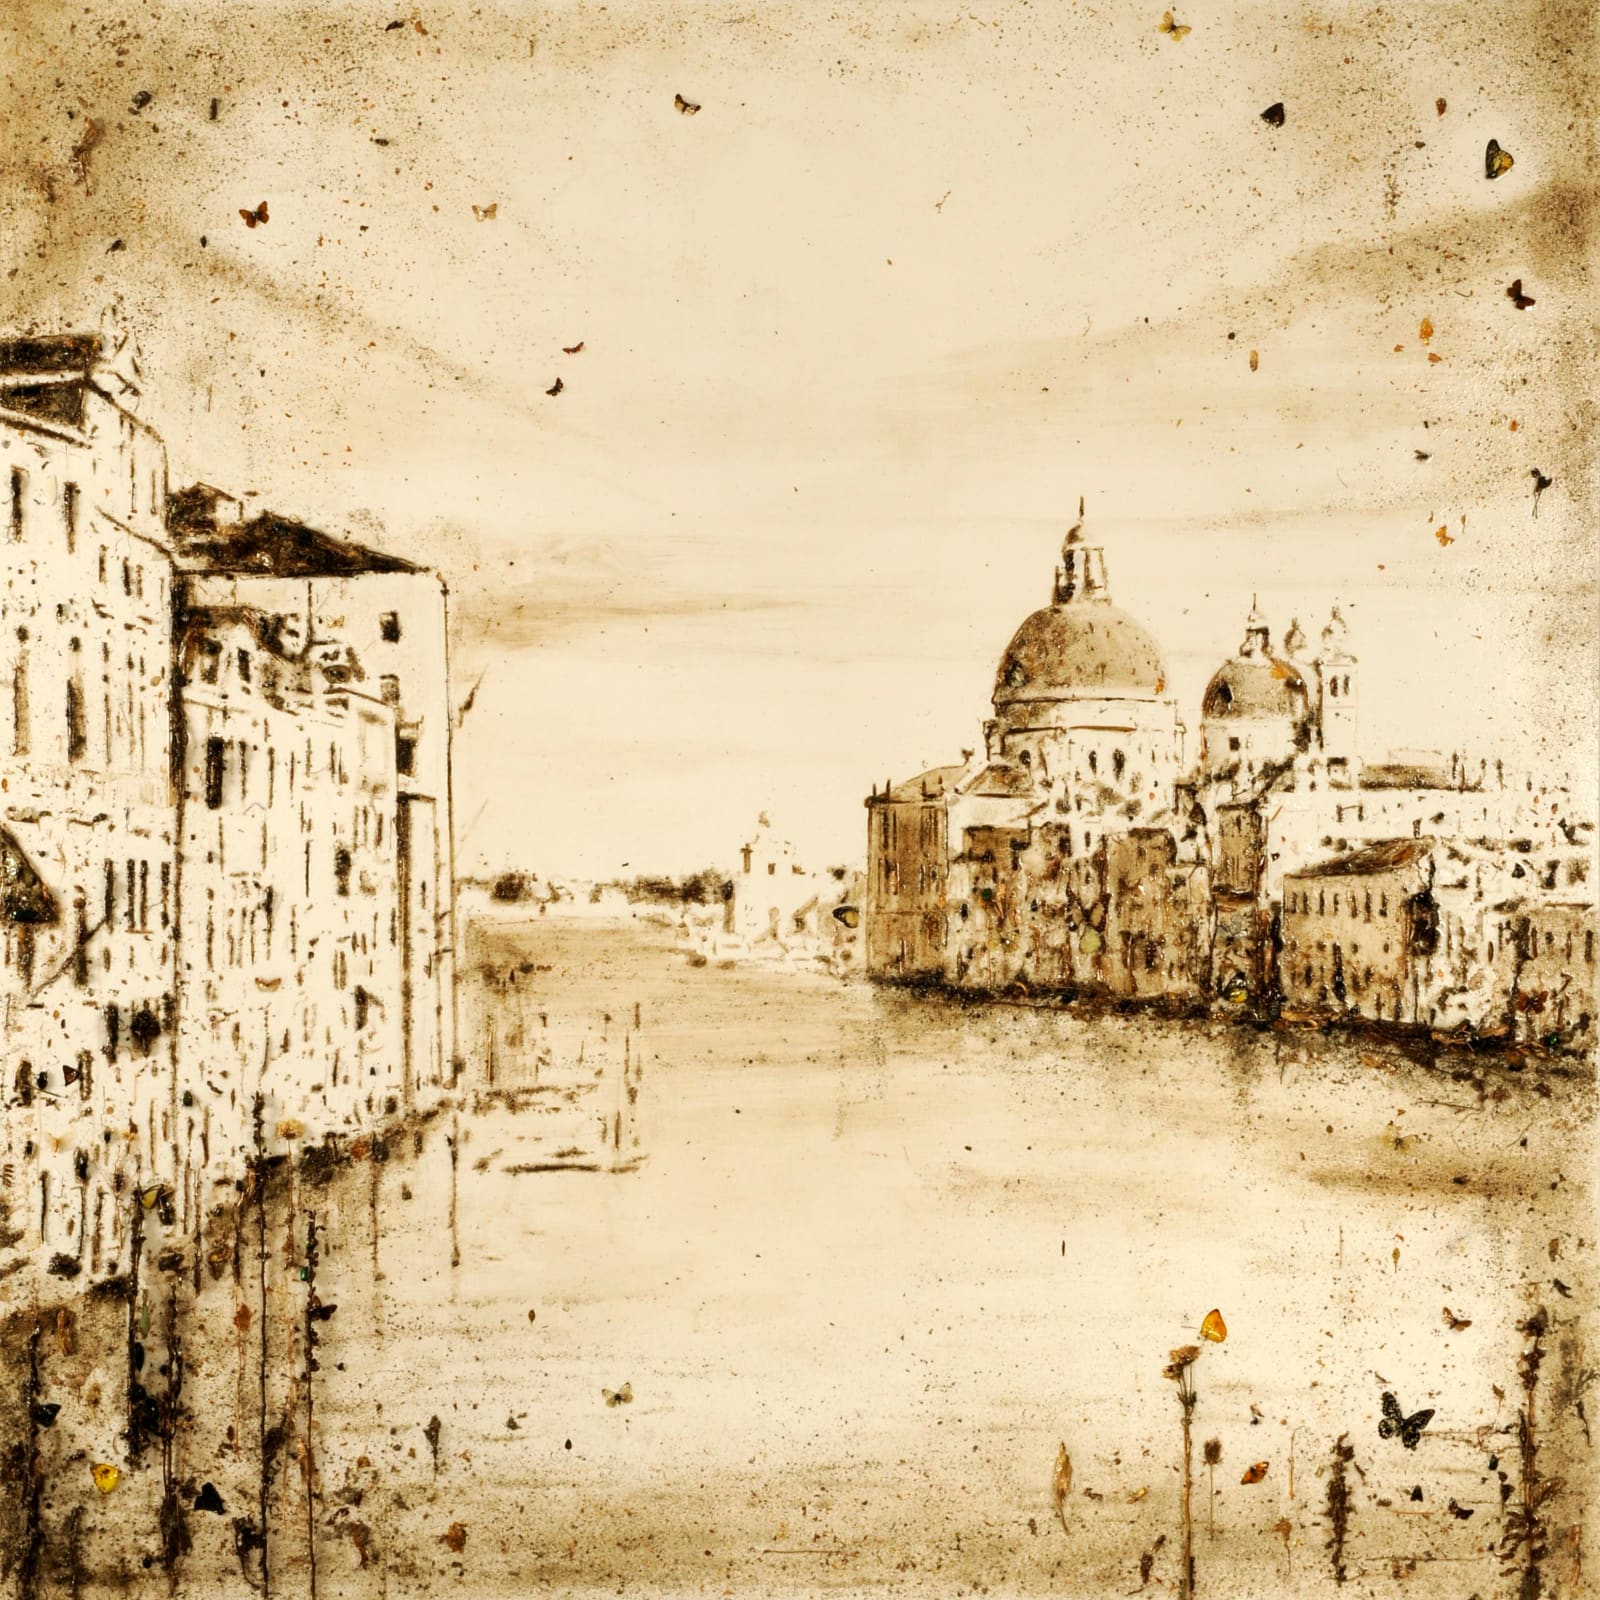 Enzo Fiore, Apocalisse Venezia S. M. Salute, 2015